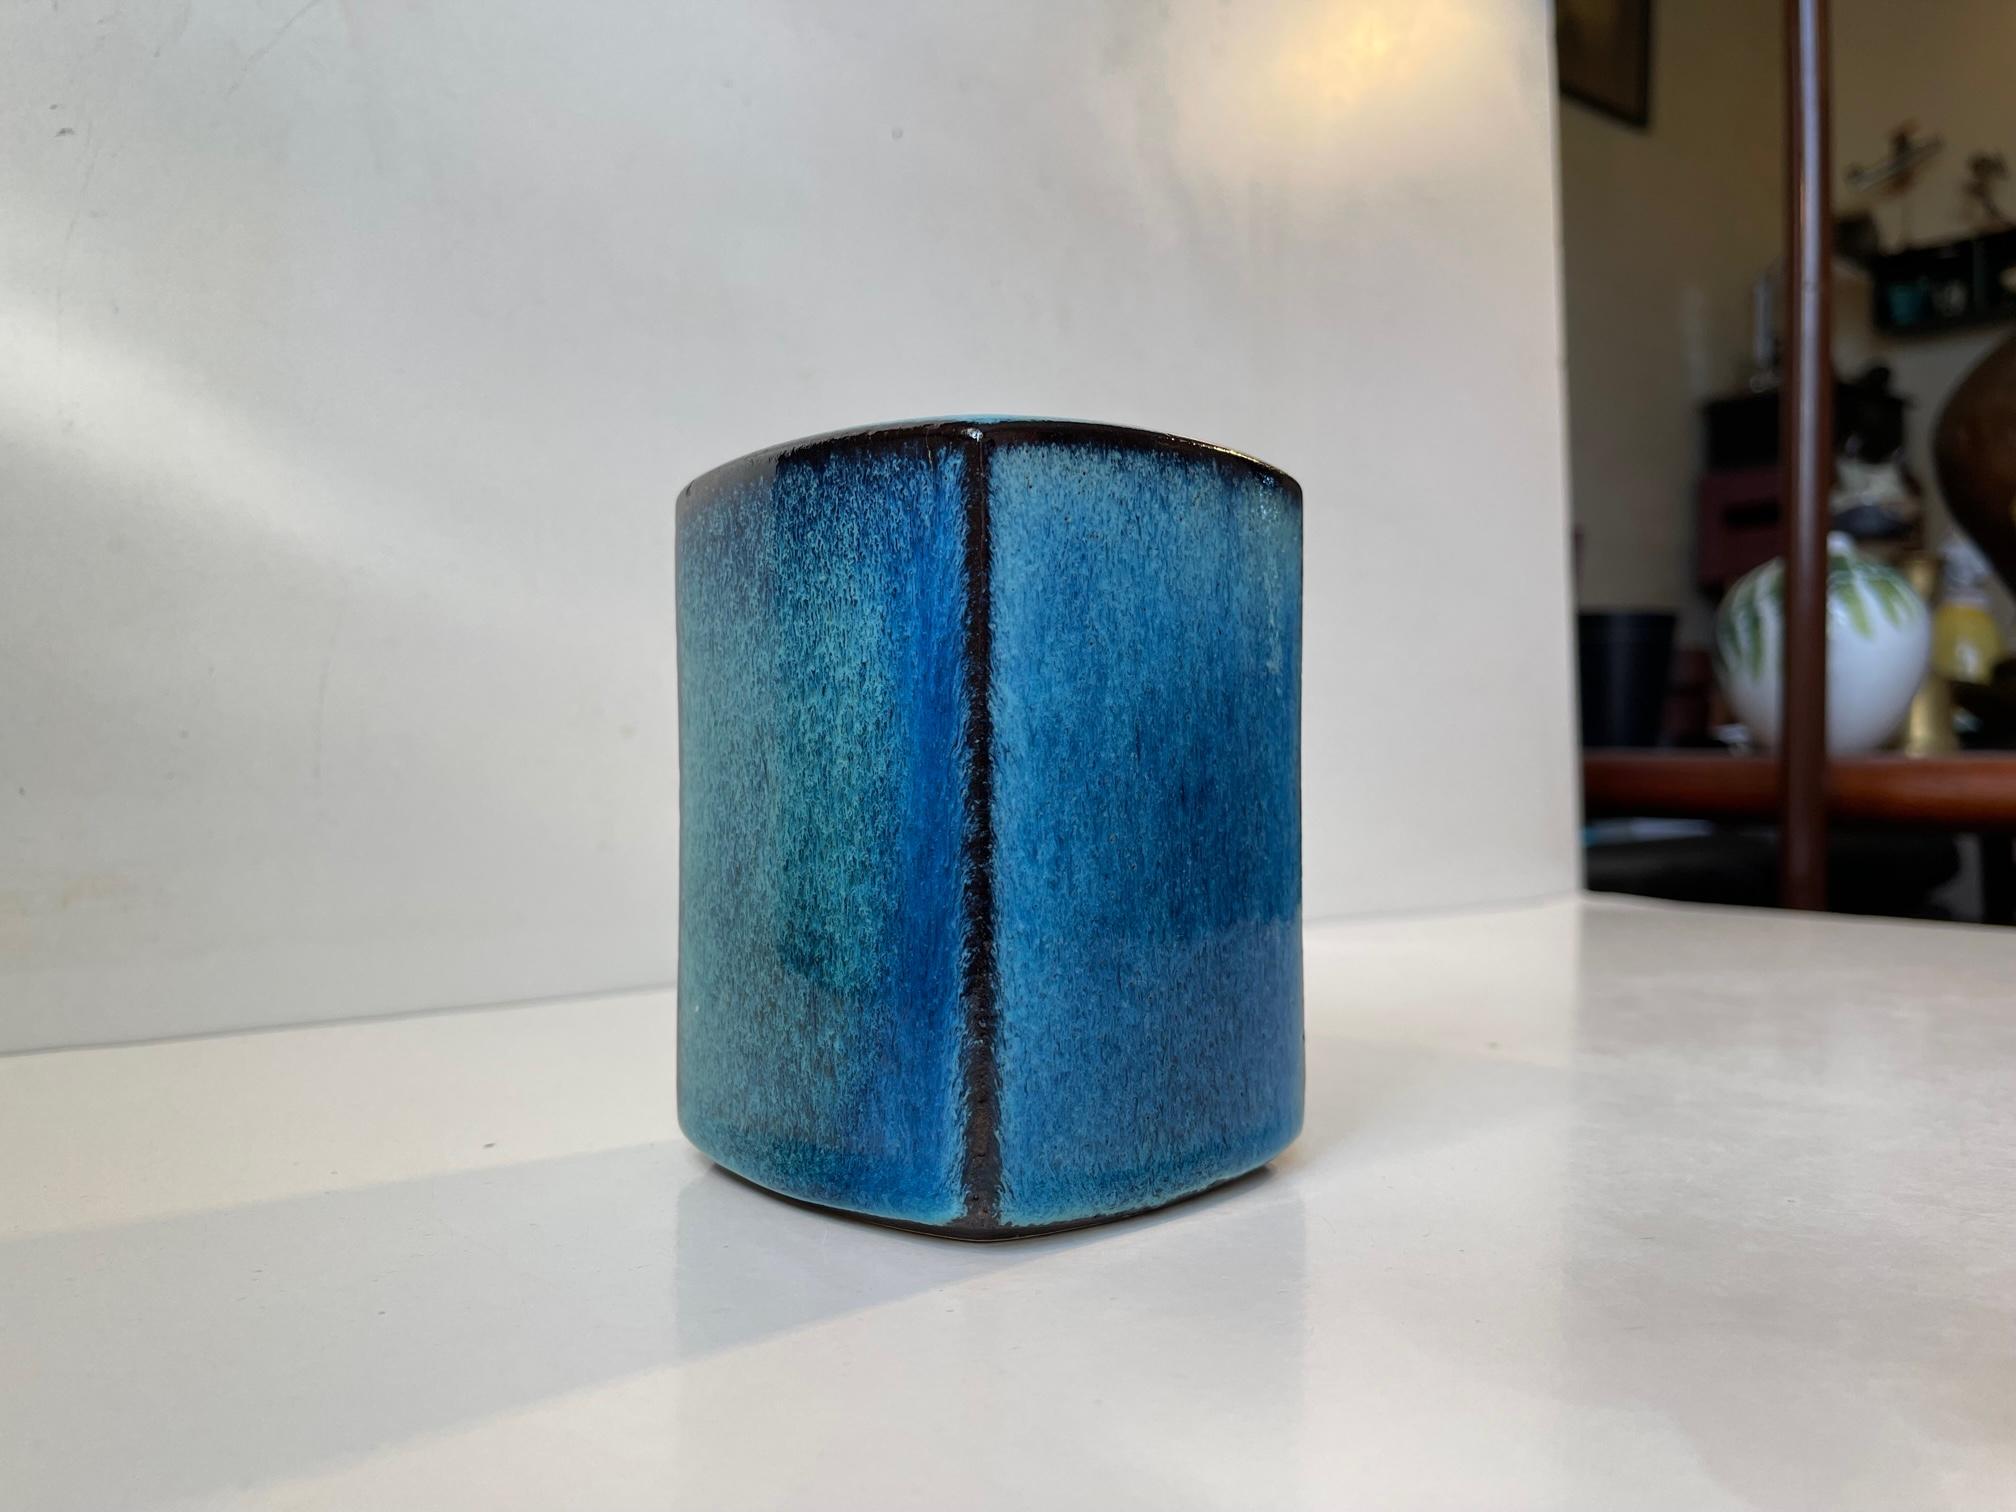 Late 20th Century Danish Stoneware Vase in Blue Glazes by Preben Gottshalk-Olsen, 1970s